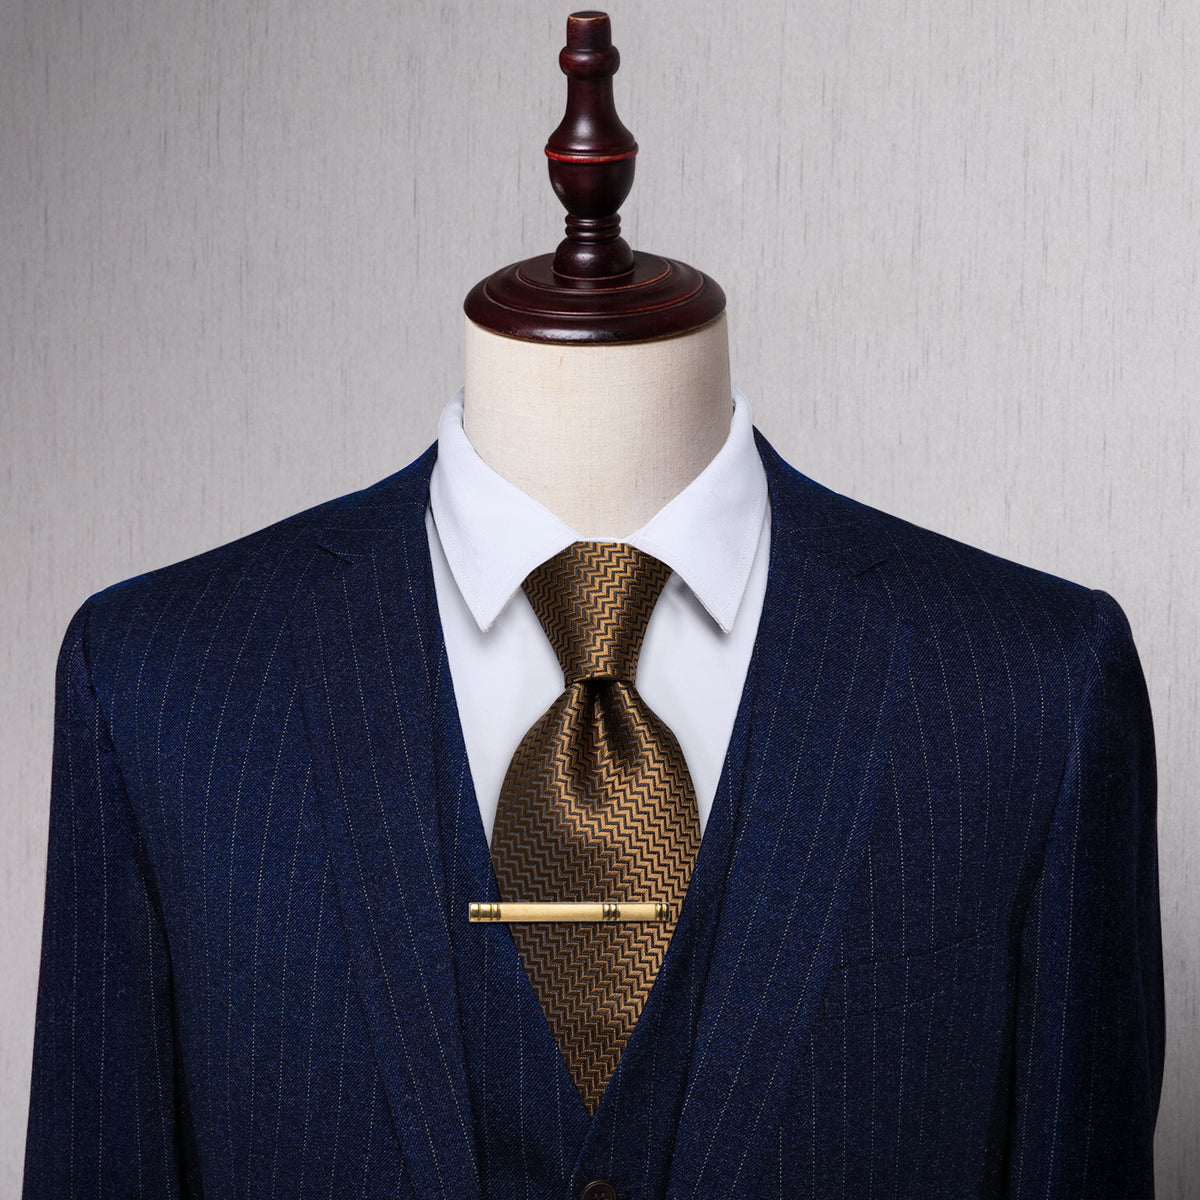 Brown Irregular Striped Silk Necktie with Golden Tie Clip